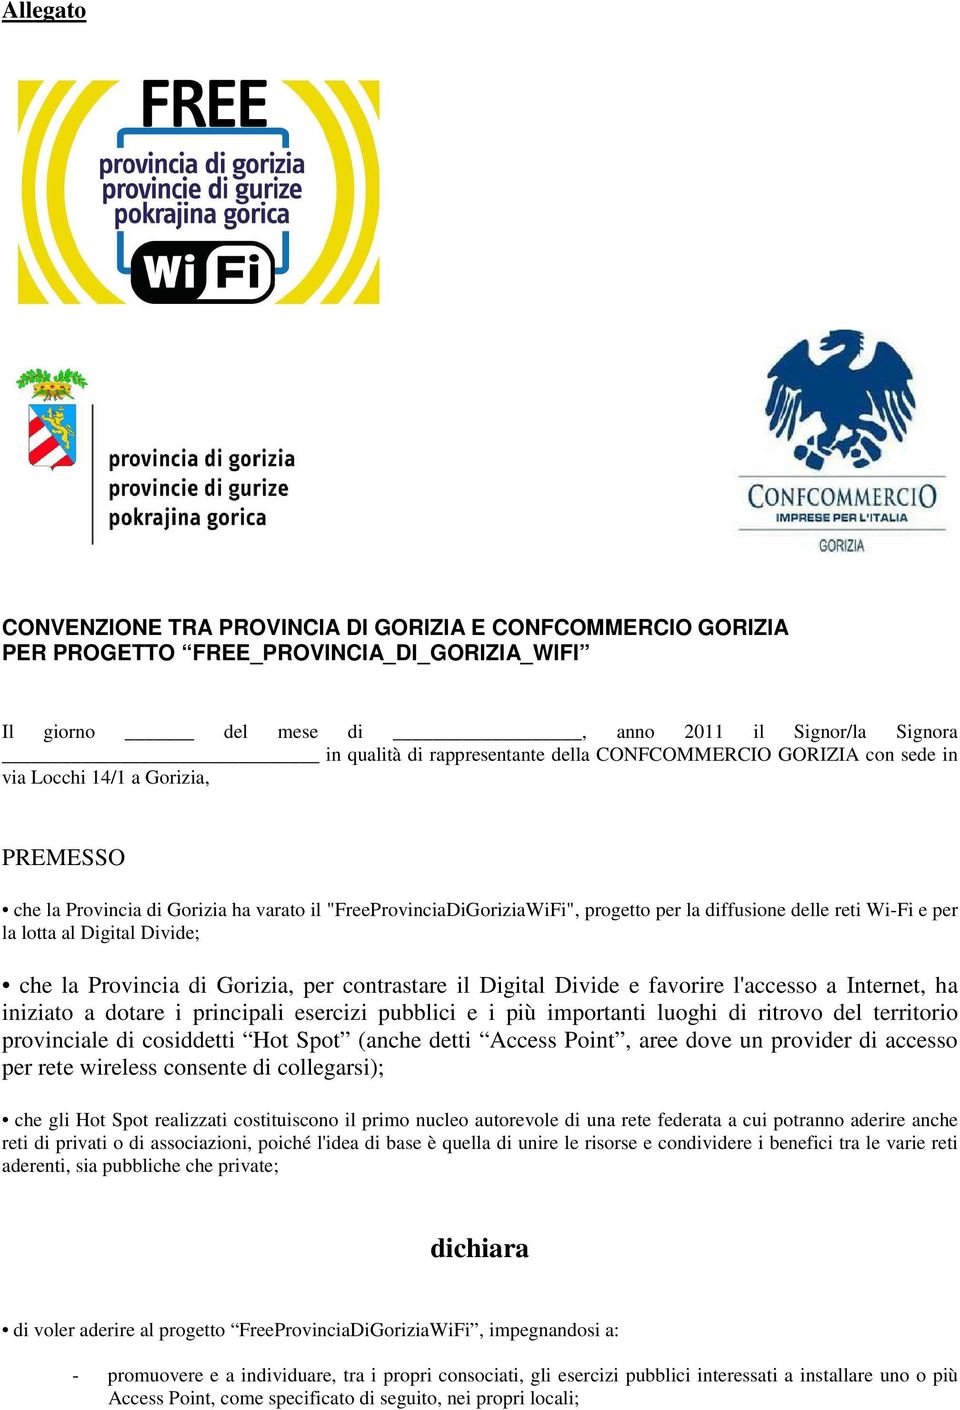 lotta al Digital Divide; che la Provincia di Gorizia, per contrastare il Digital Divide e favorire l'accesso a Internet, ha iniziato a dotare i principali esercizi pubblici e i più importanti luoghi